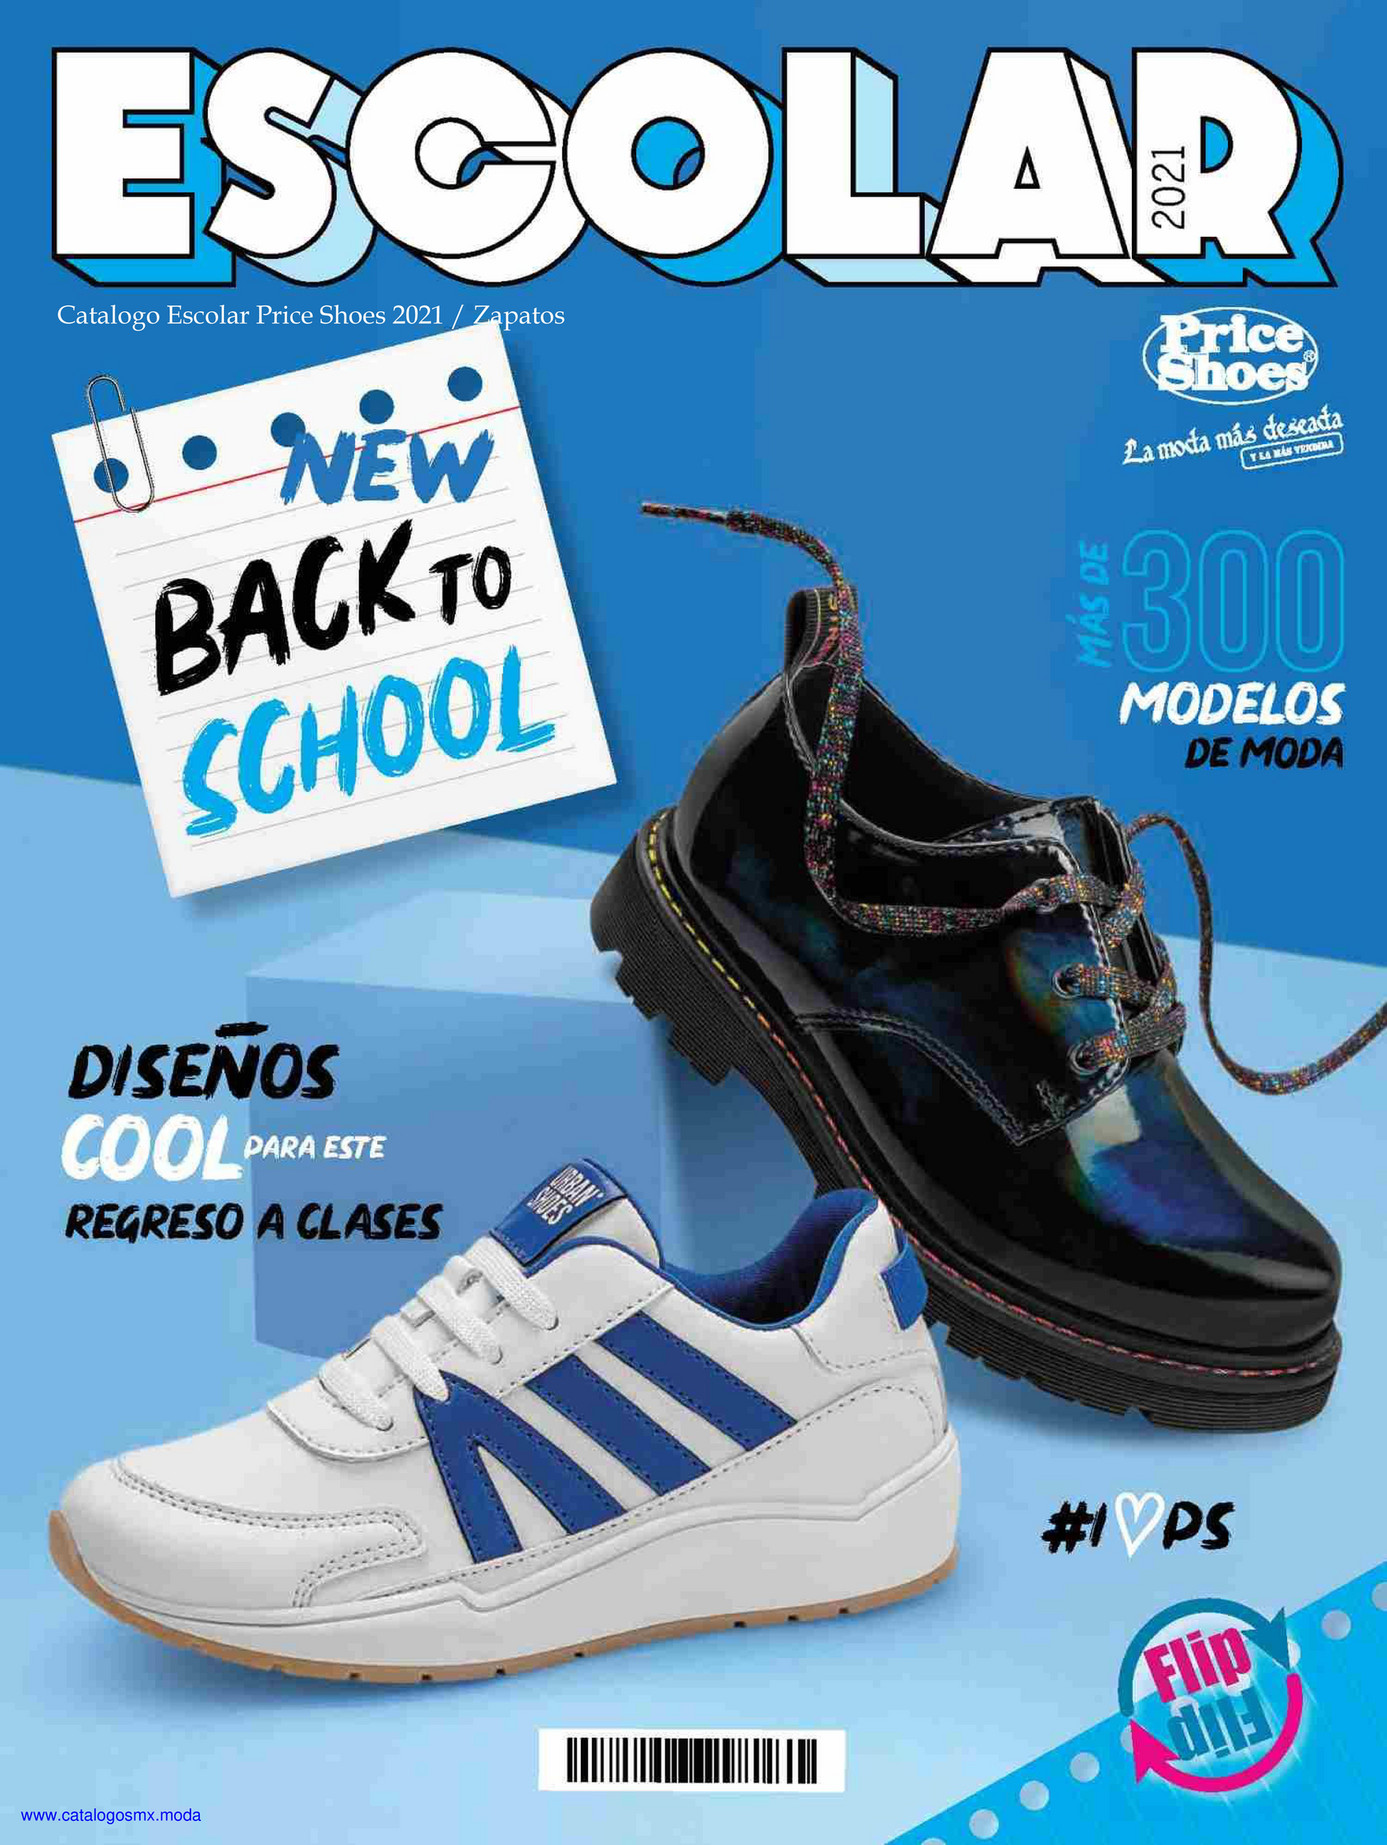 catalog - EscolarPS21V1 - Página 1 - Created with Publitas.com